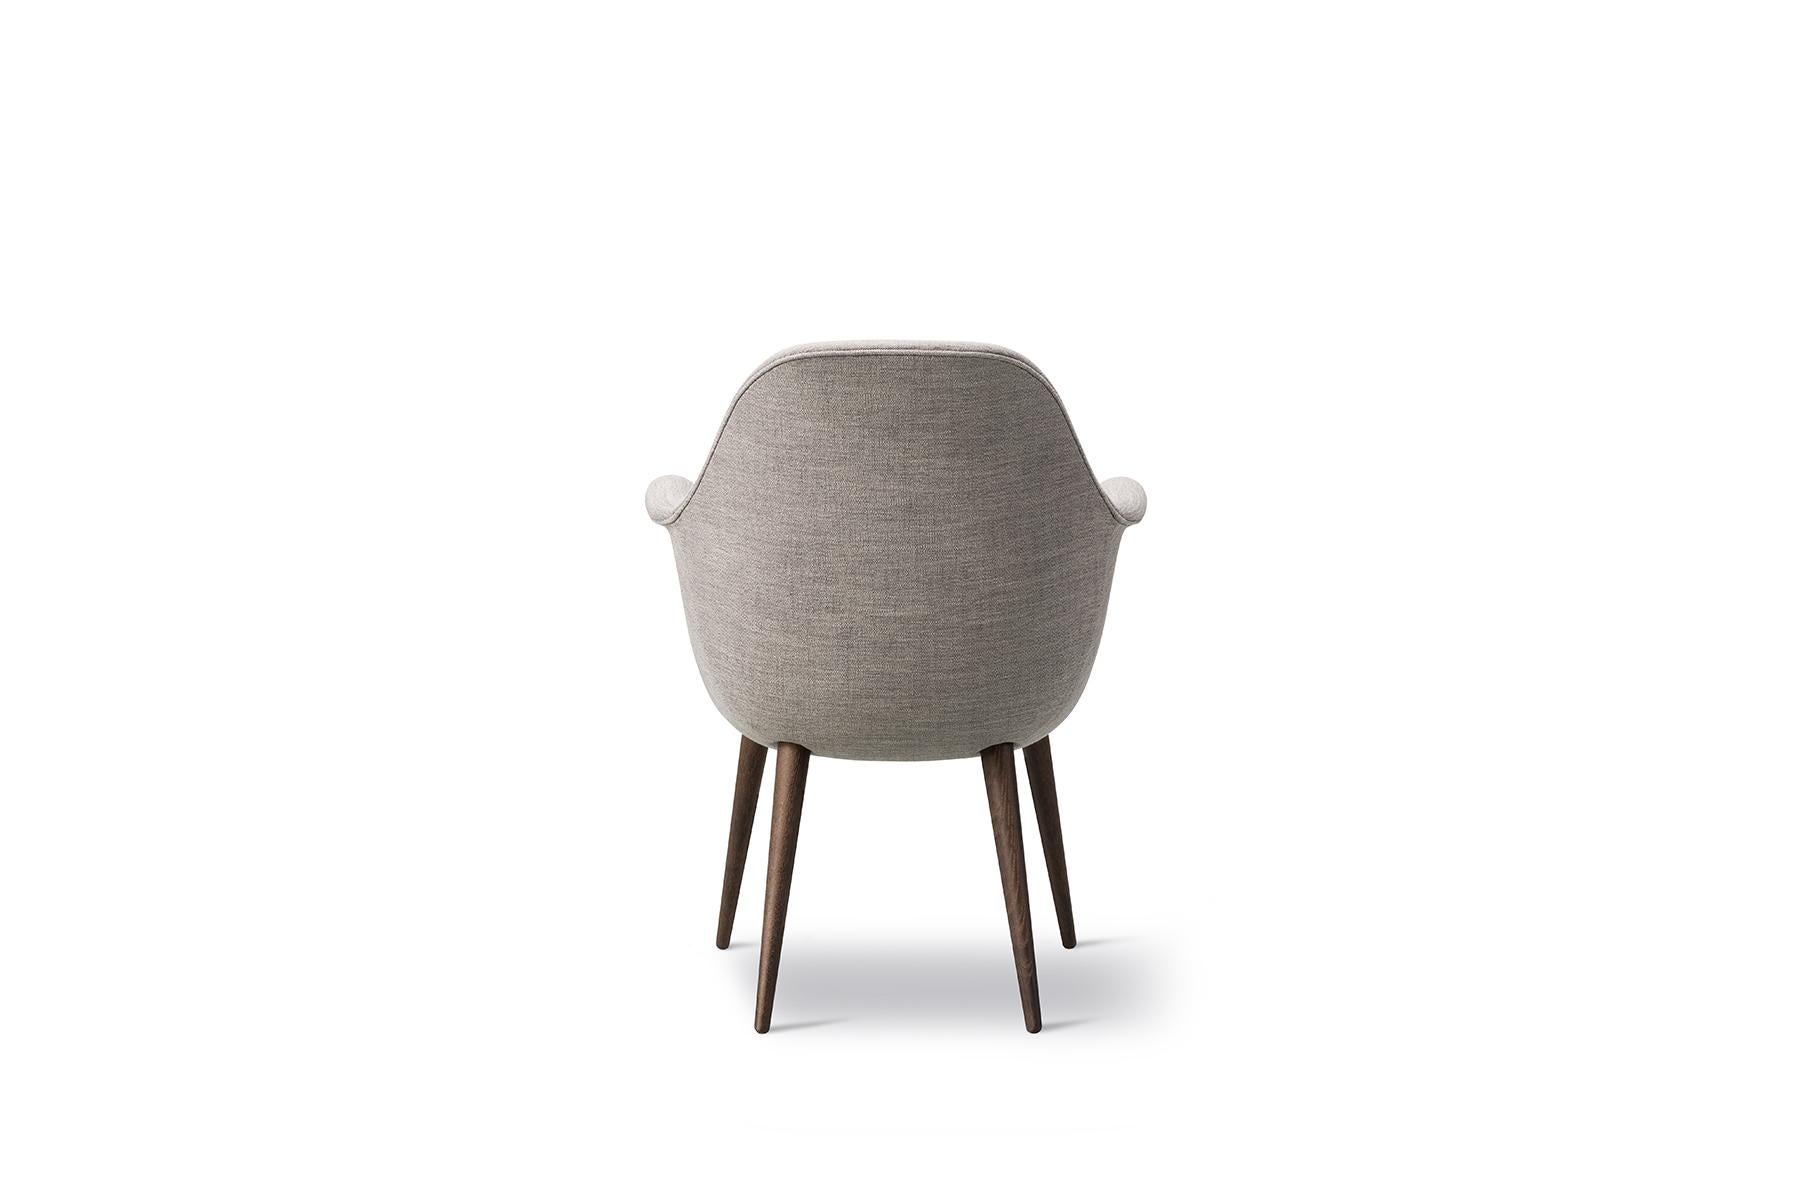 Der Swoon-Stuhl ist die kleinste aufrechte Version von Swoon, die noch kompakter ist. Mit seiner einzigartigen Schale, die Armlehnen, Sitz und Rückenlehne miteinander verbindet, den stützenden, weichen Kissen und der Auswahl an Massivholz haben Sie